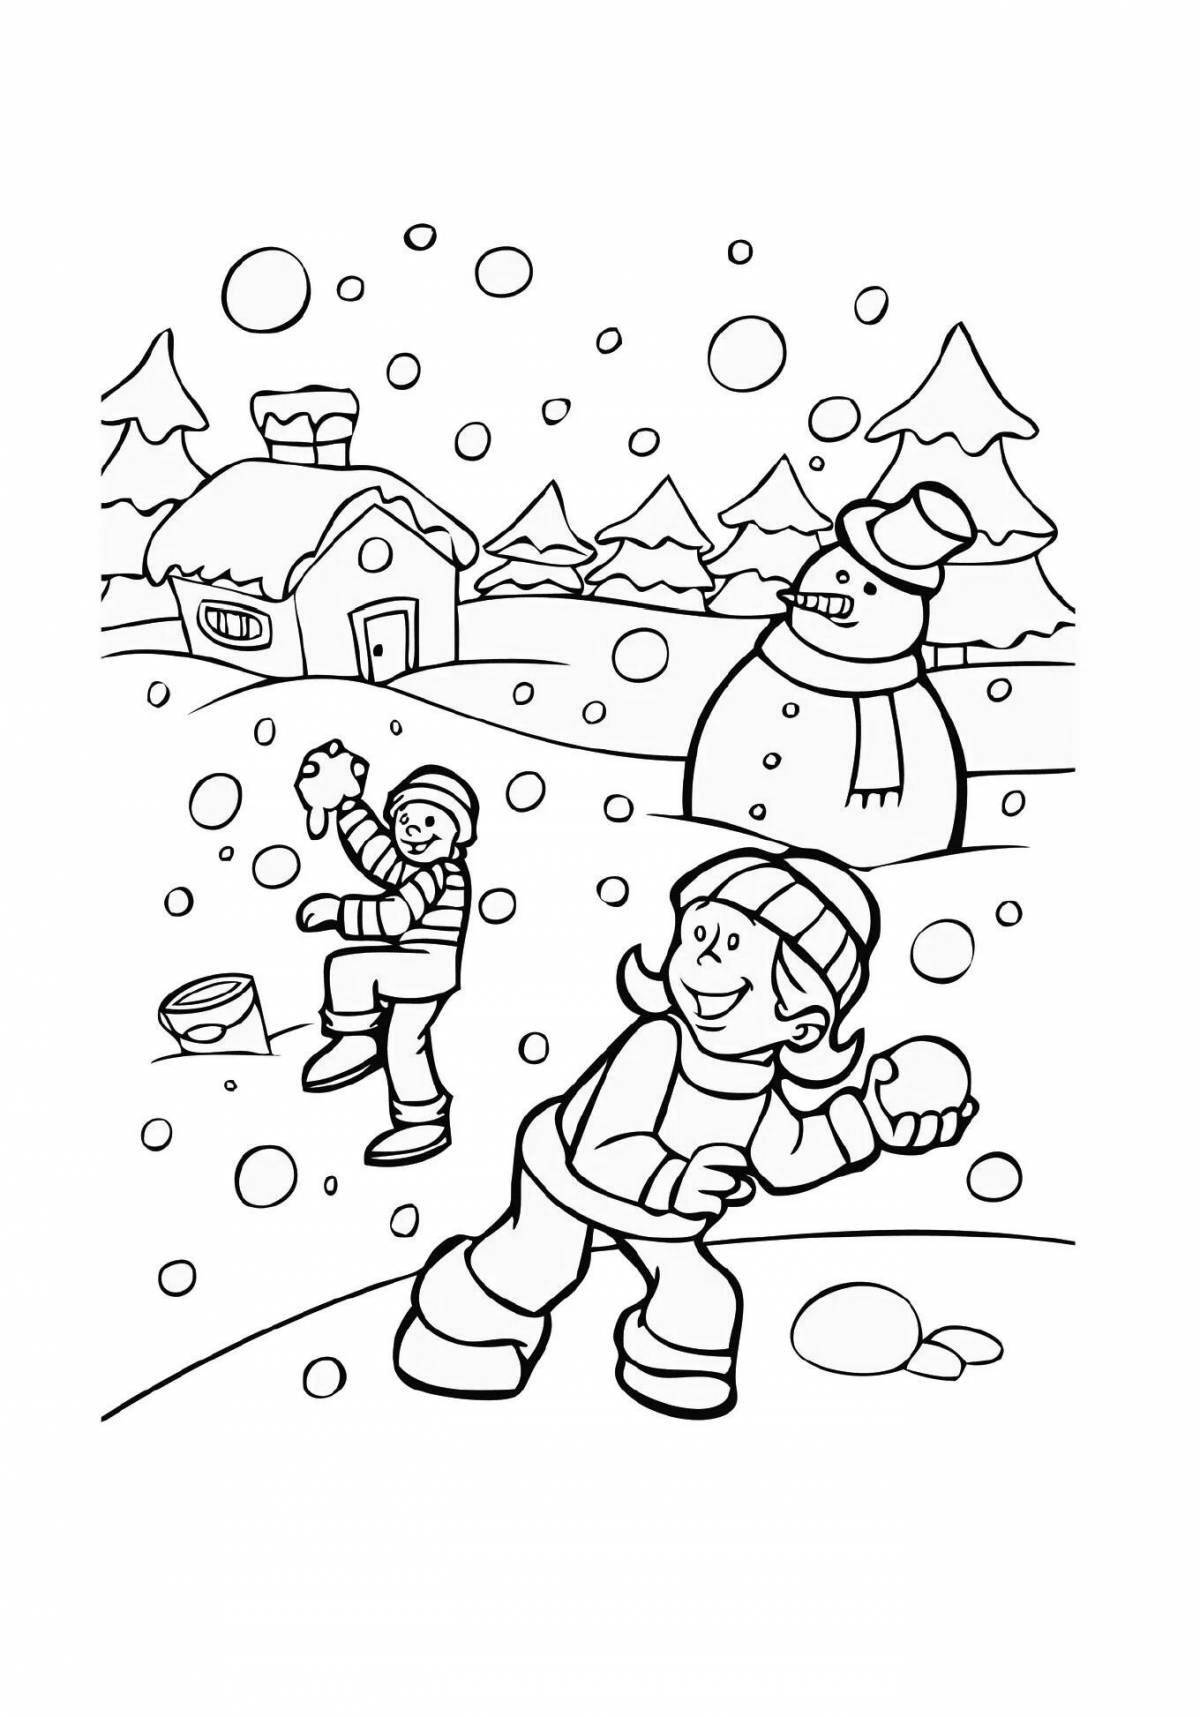 Enthusiastic children's walks in winter